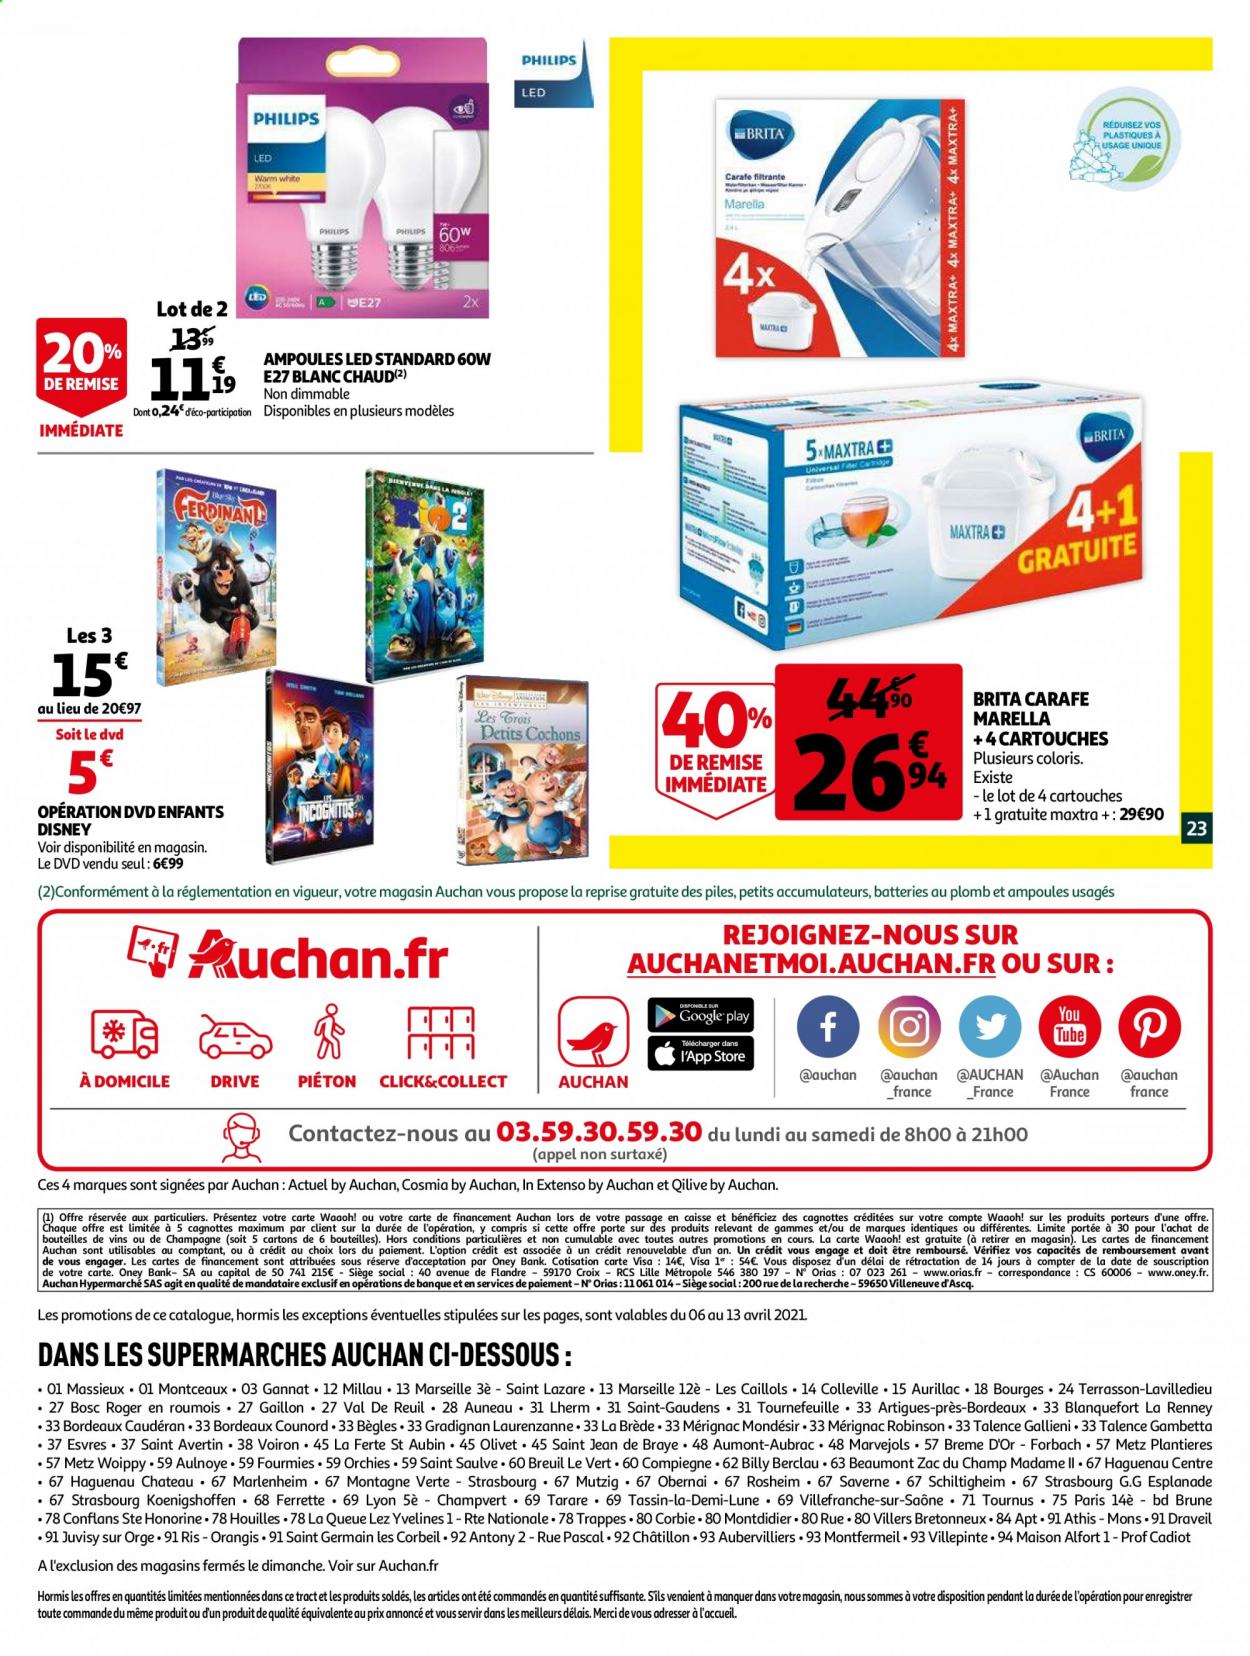 thumbnail - Catalogue Auchan - 06/04/2021 - 13/04/2021 - Produits soldés - Philips, Disney, Bordeaux, vin rouge, vin, carafe, Brita, carafe filtrante, DVD, maison. Page 23.